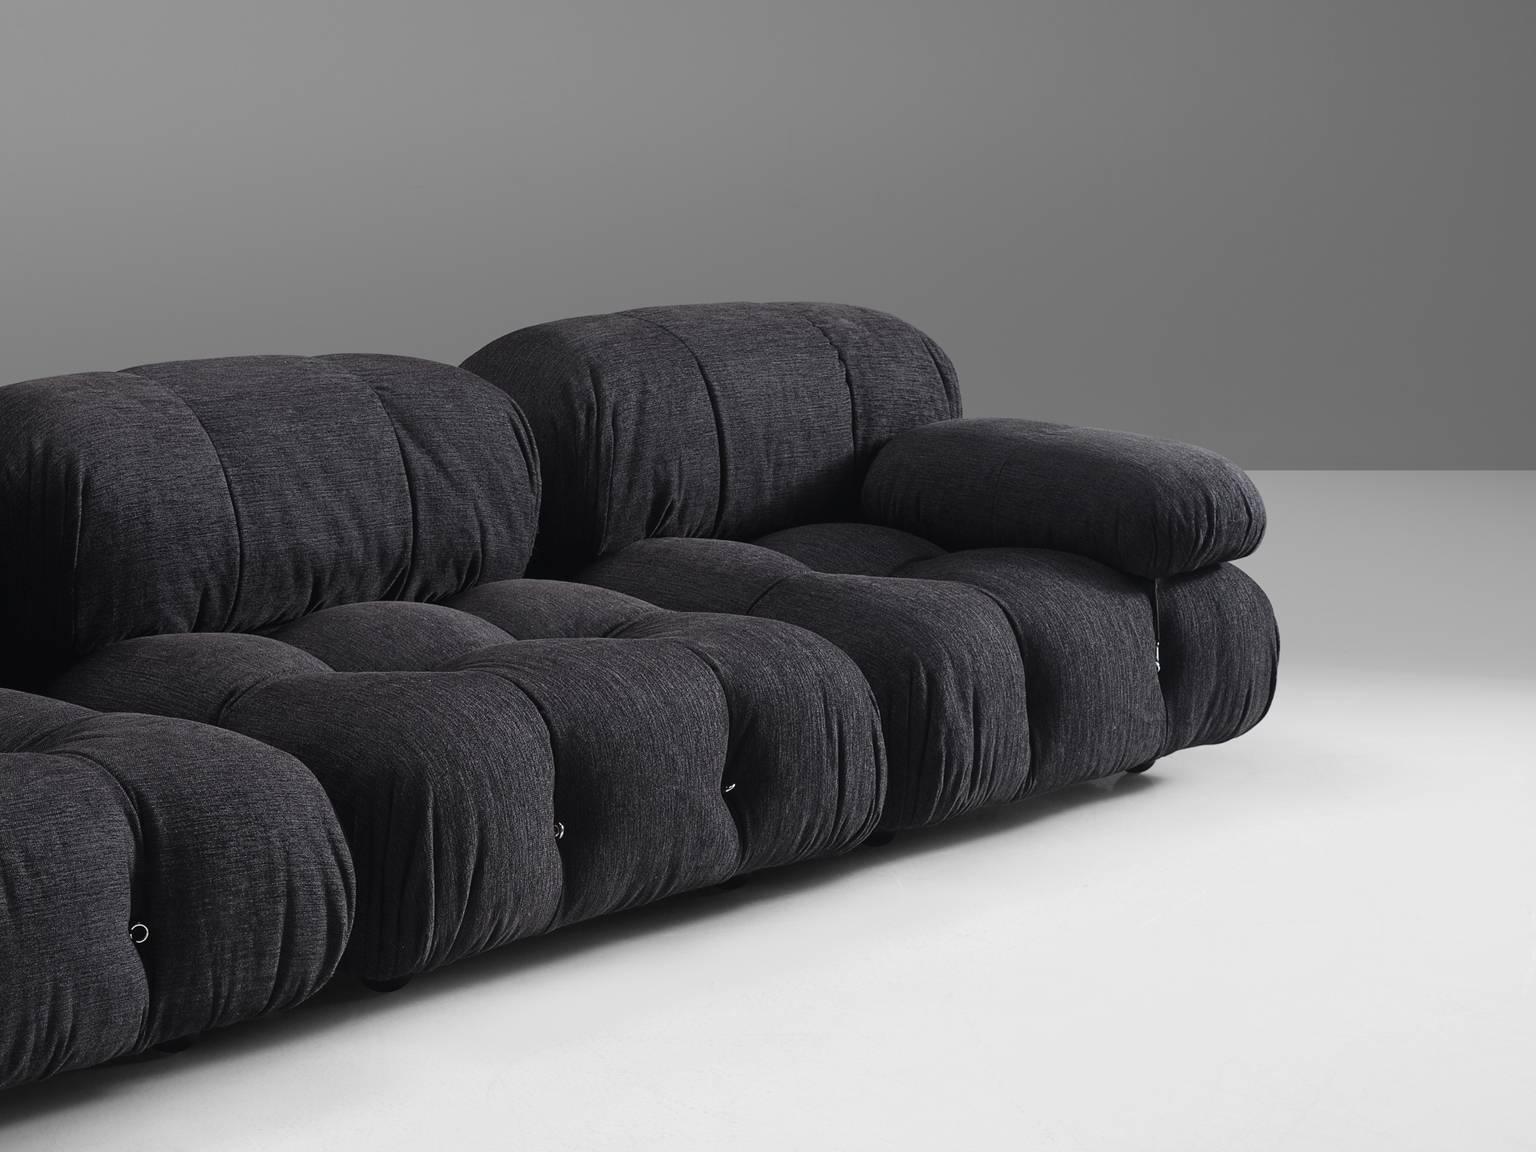 Fabric Listing for B: Mario Bellini 'Camaleonda' newly upholstered in grey velvet